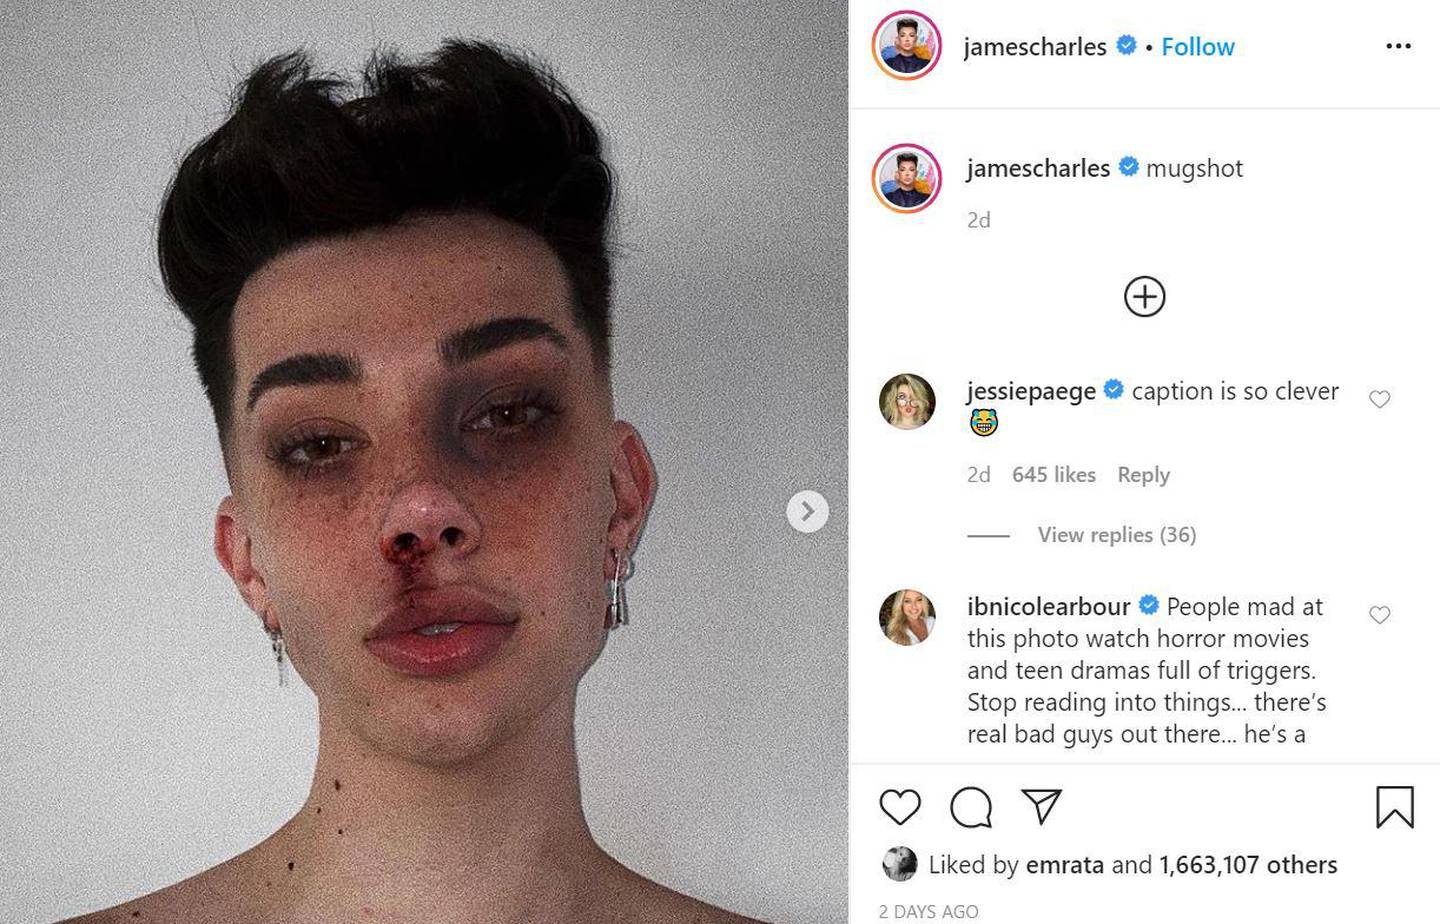 Make-up influencer James Charles shared his attempt at the mugshot challenge on Instagram. James Charles / Instagram